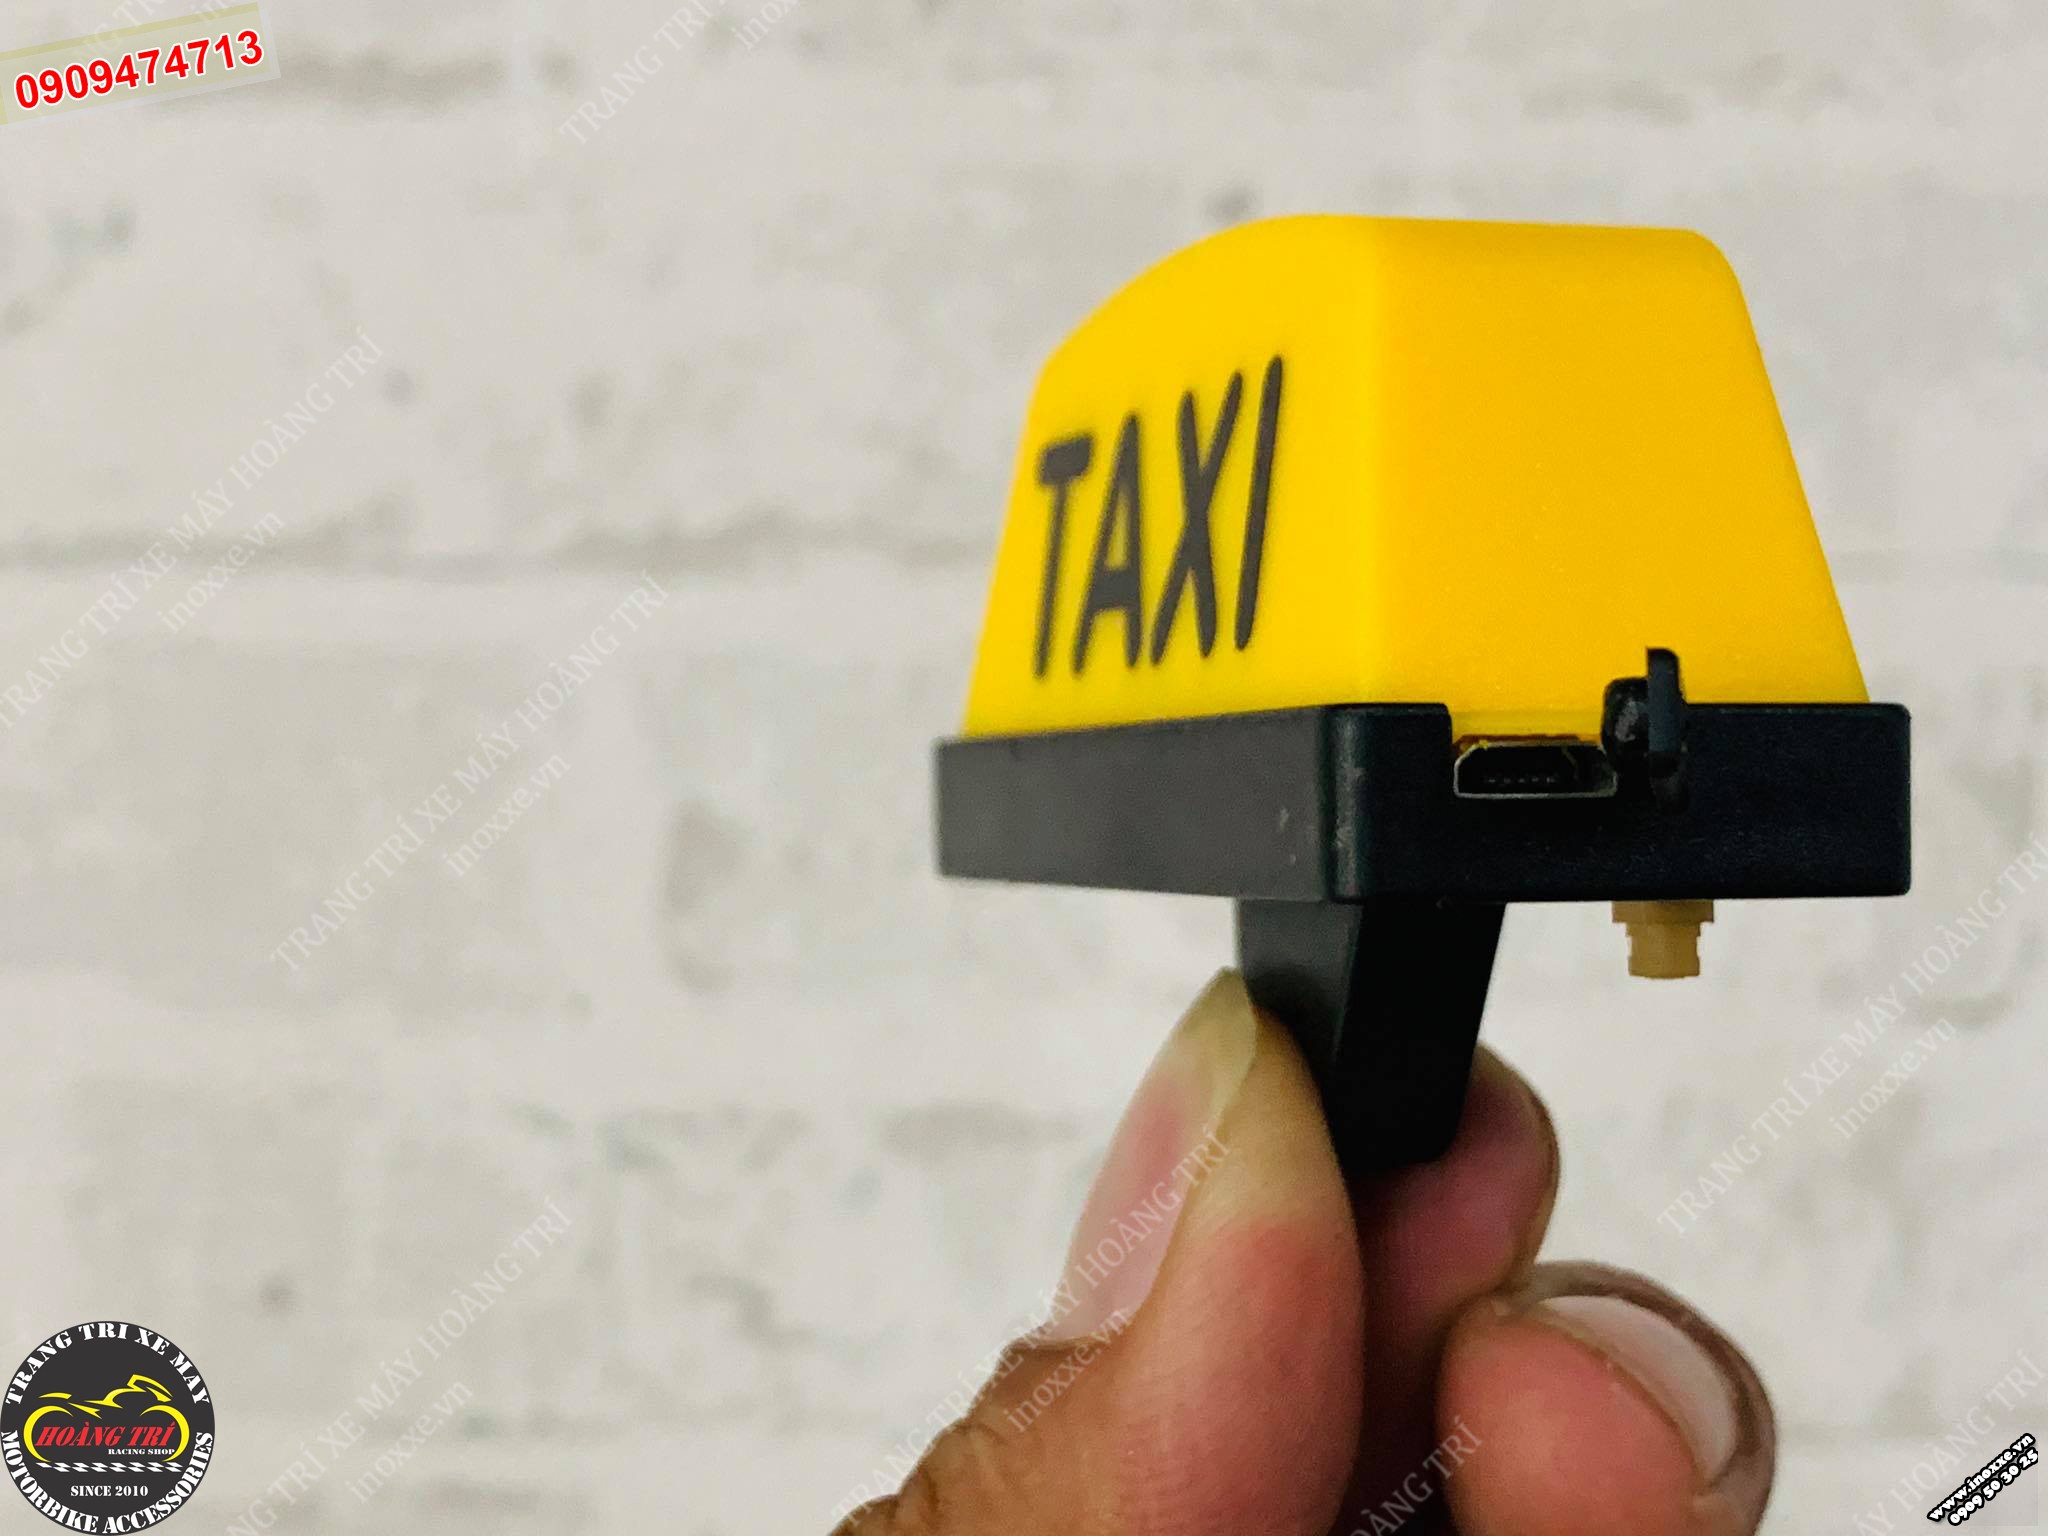 Hộp đèn Taxi có thể đổi màu, đổi hiệu ứng chớp tắt